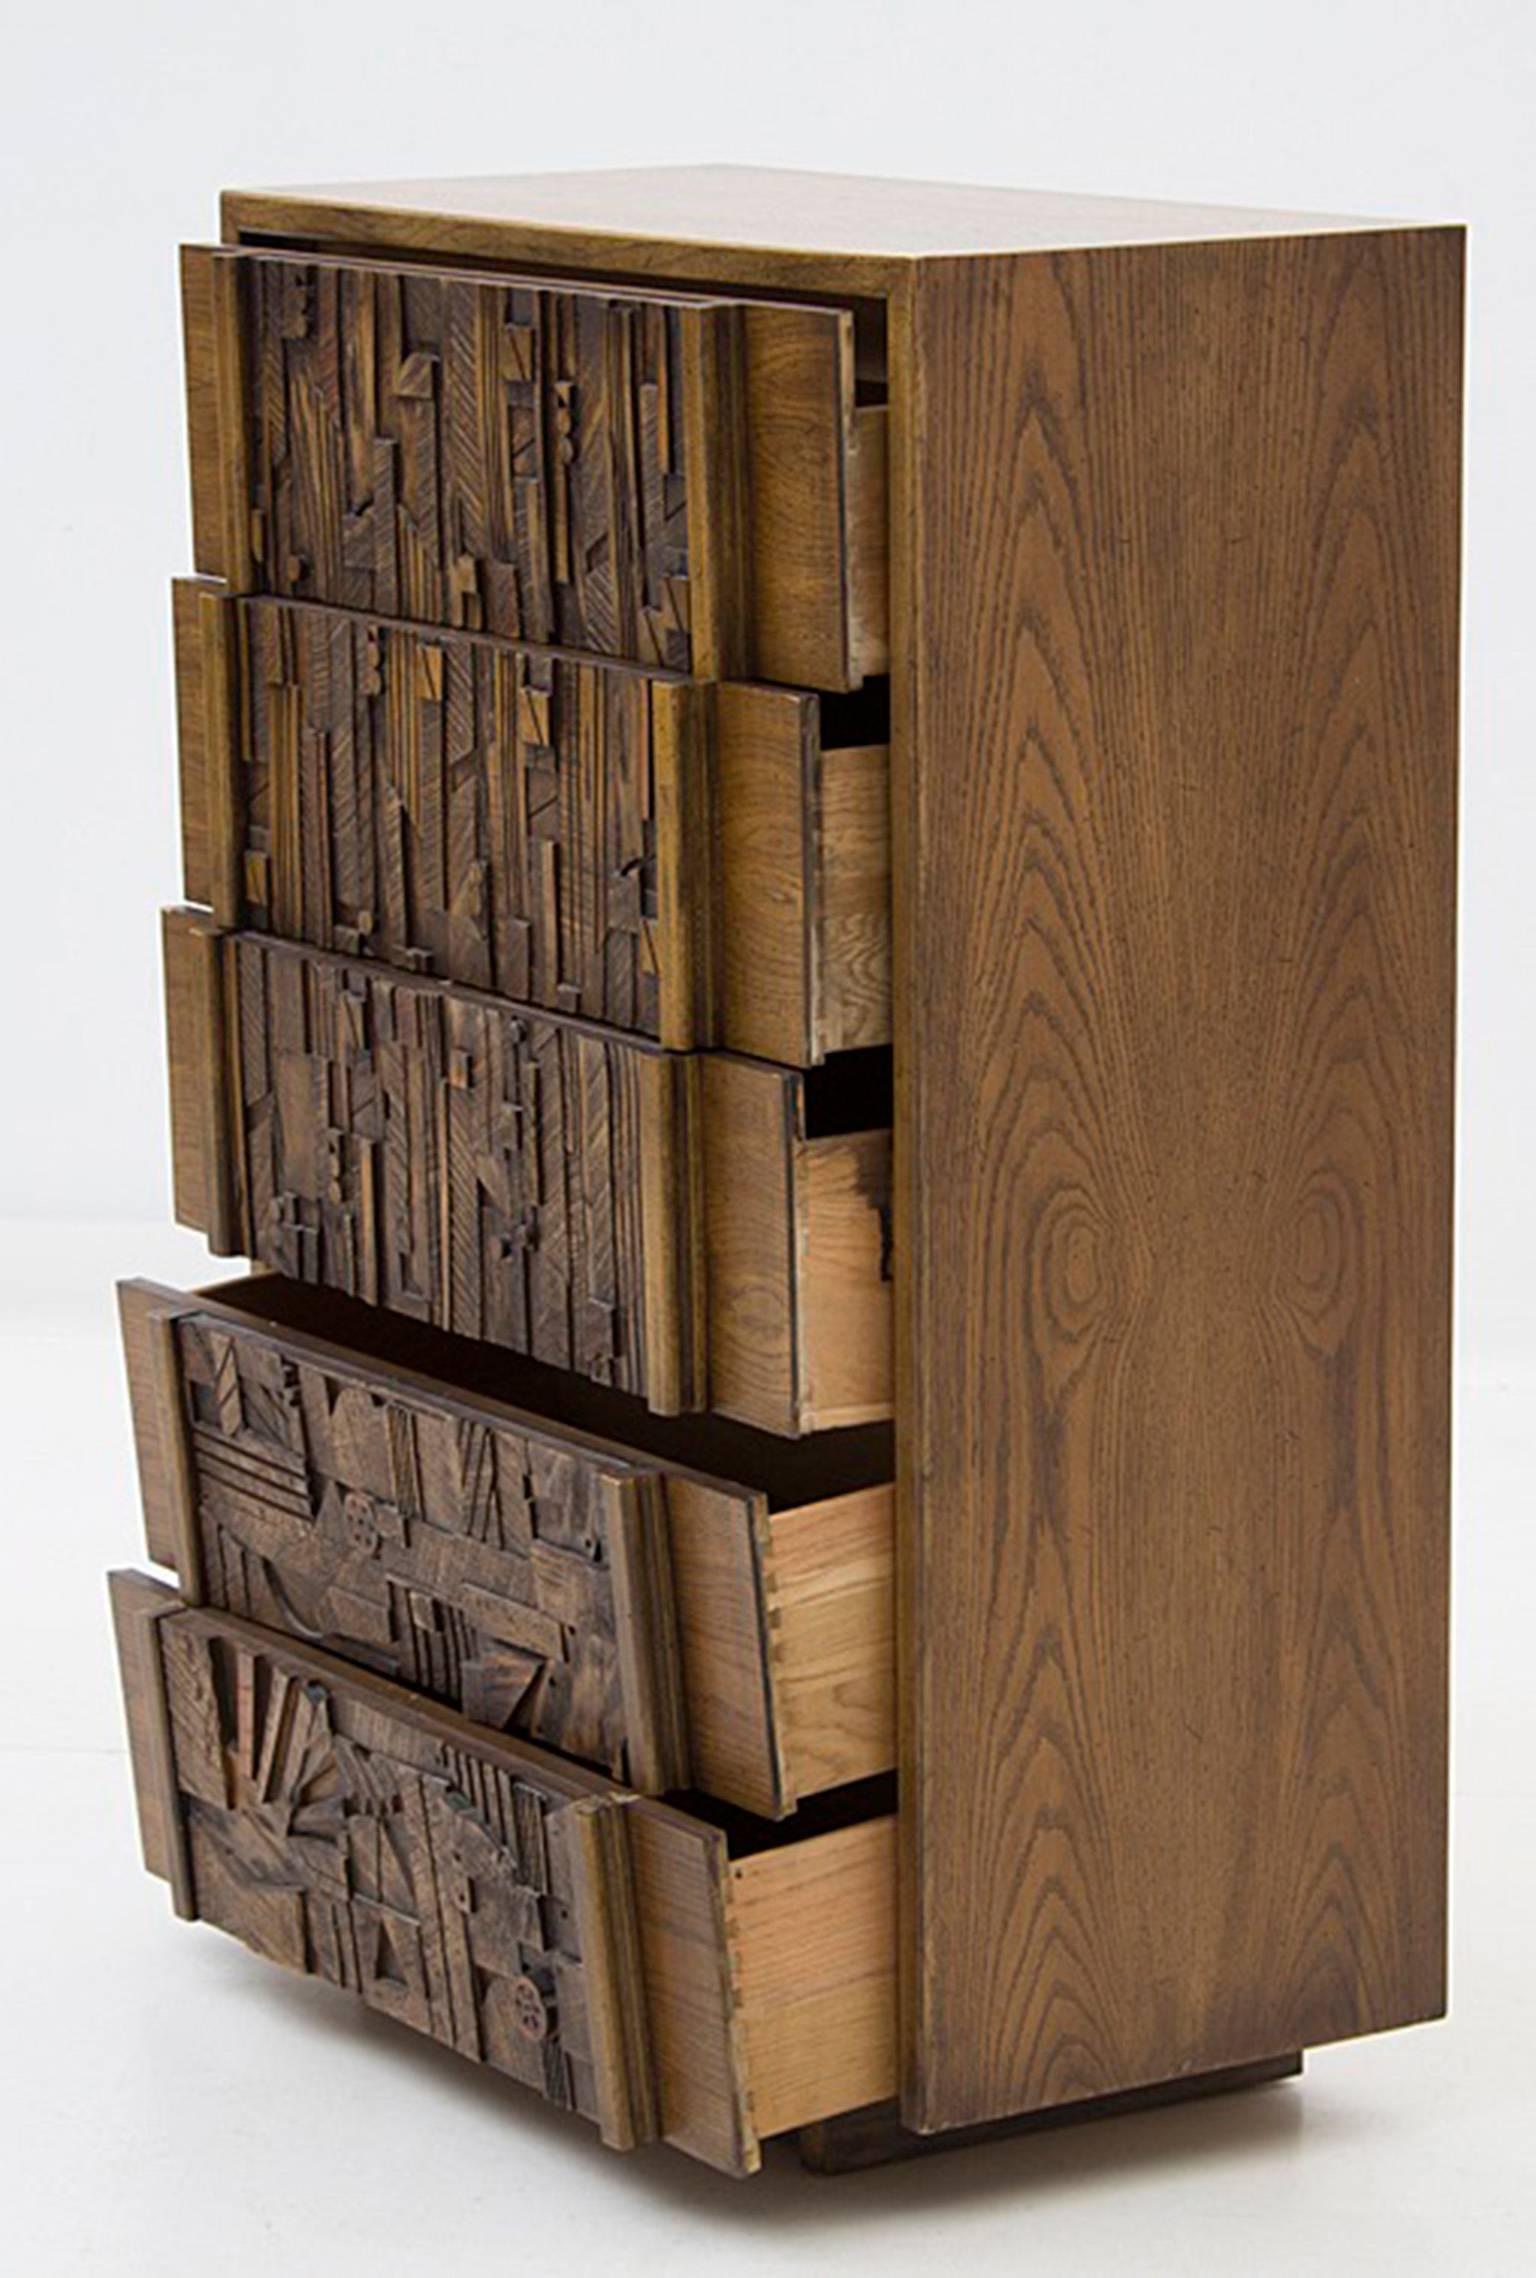 Une commode à cinq tiroirs en chêne de style brutal, conçue par Lane Furniture. La commode se compose d'une caisse en chêne avec des coins en onglet, abritant cinq tiroirs avec des façades en bois assemblées de manière asymétrique, dans un style